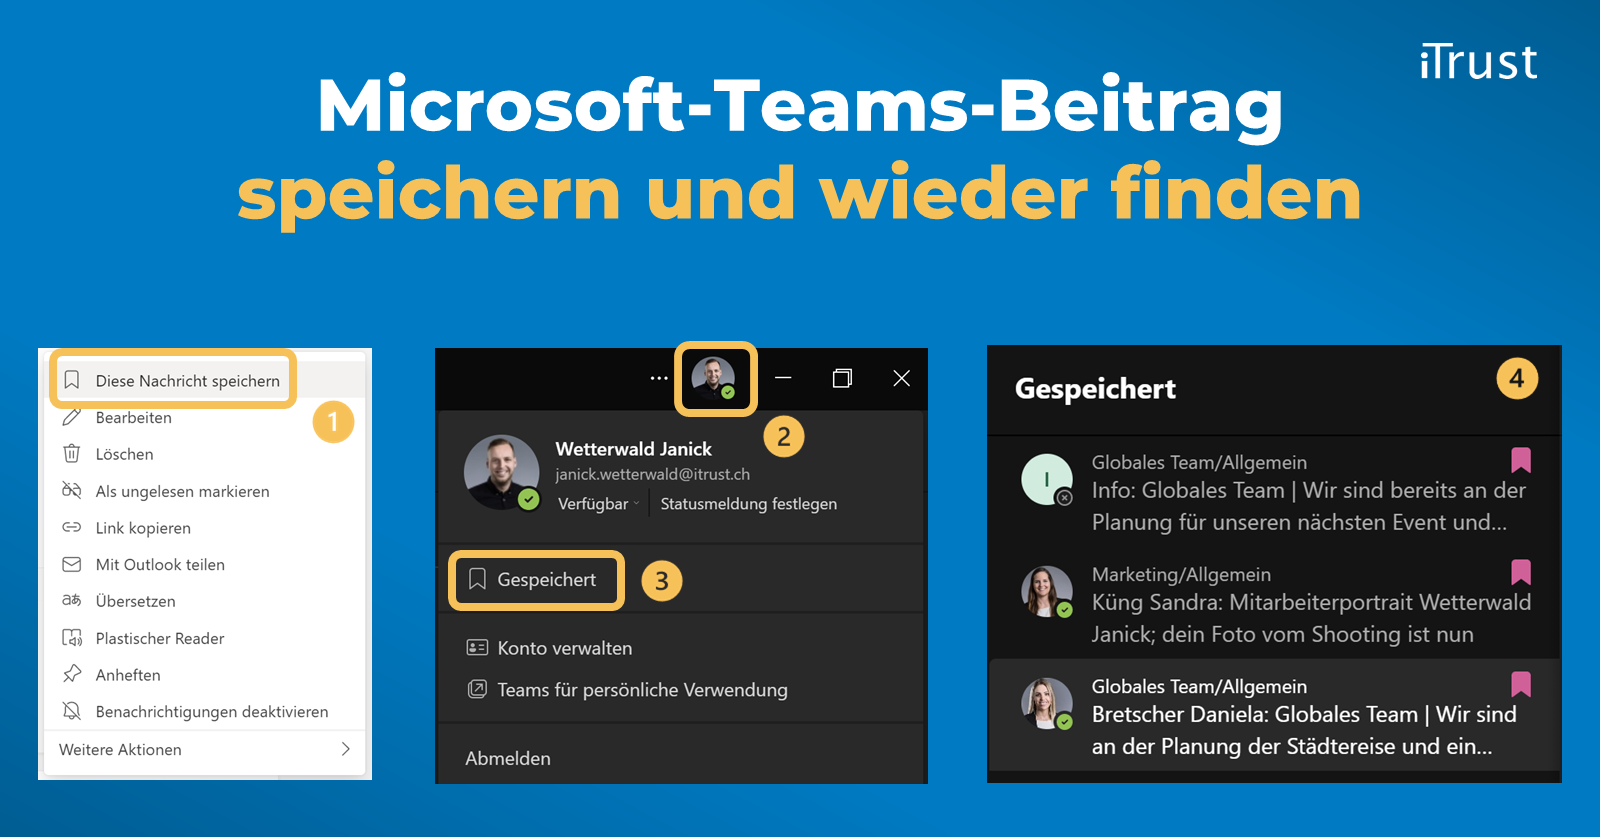 Microsoft-Teams-Beitrag speichern und wieder finden